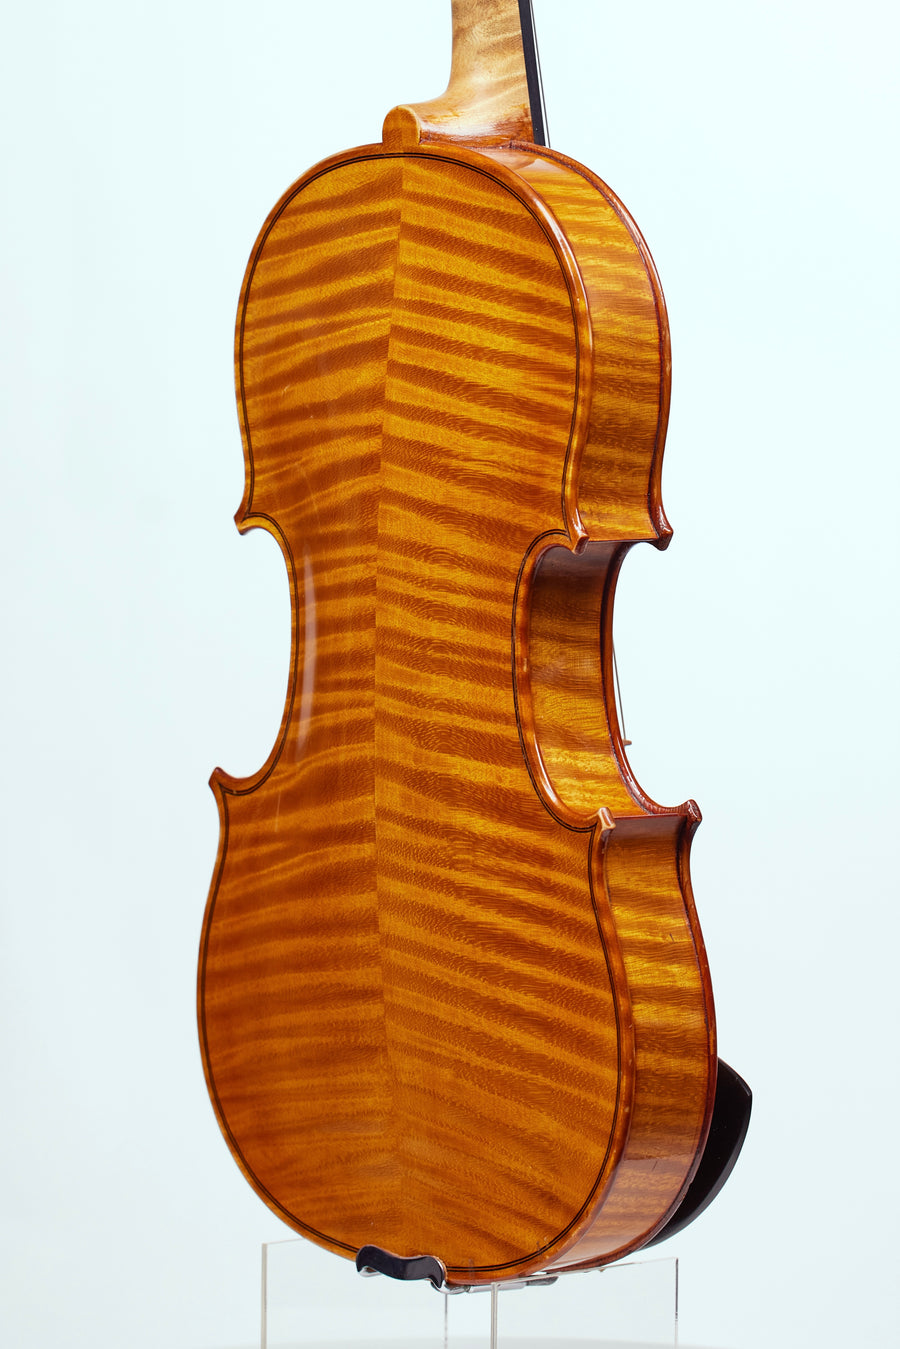 A Fine French Violin From Collin Mezin Pere for Hawkes & Son, 1896.